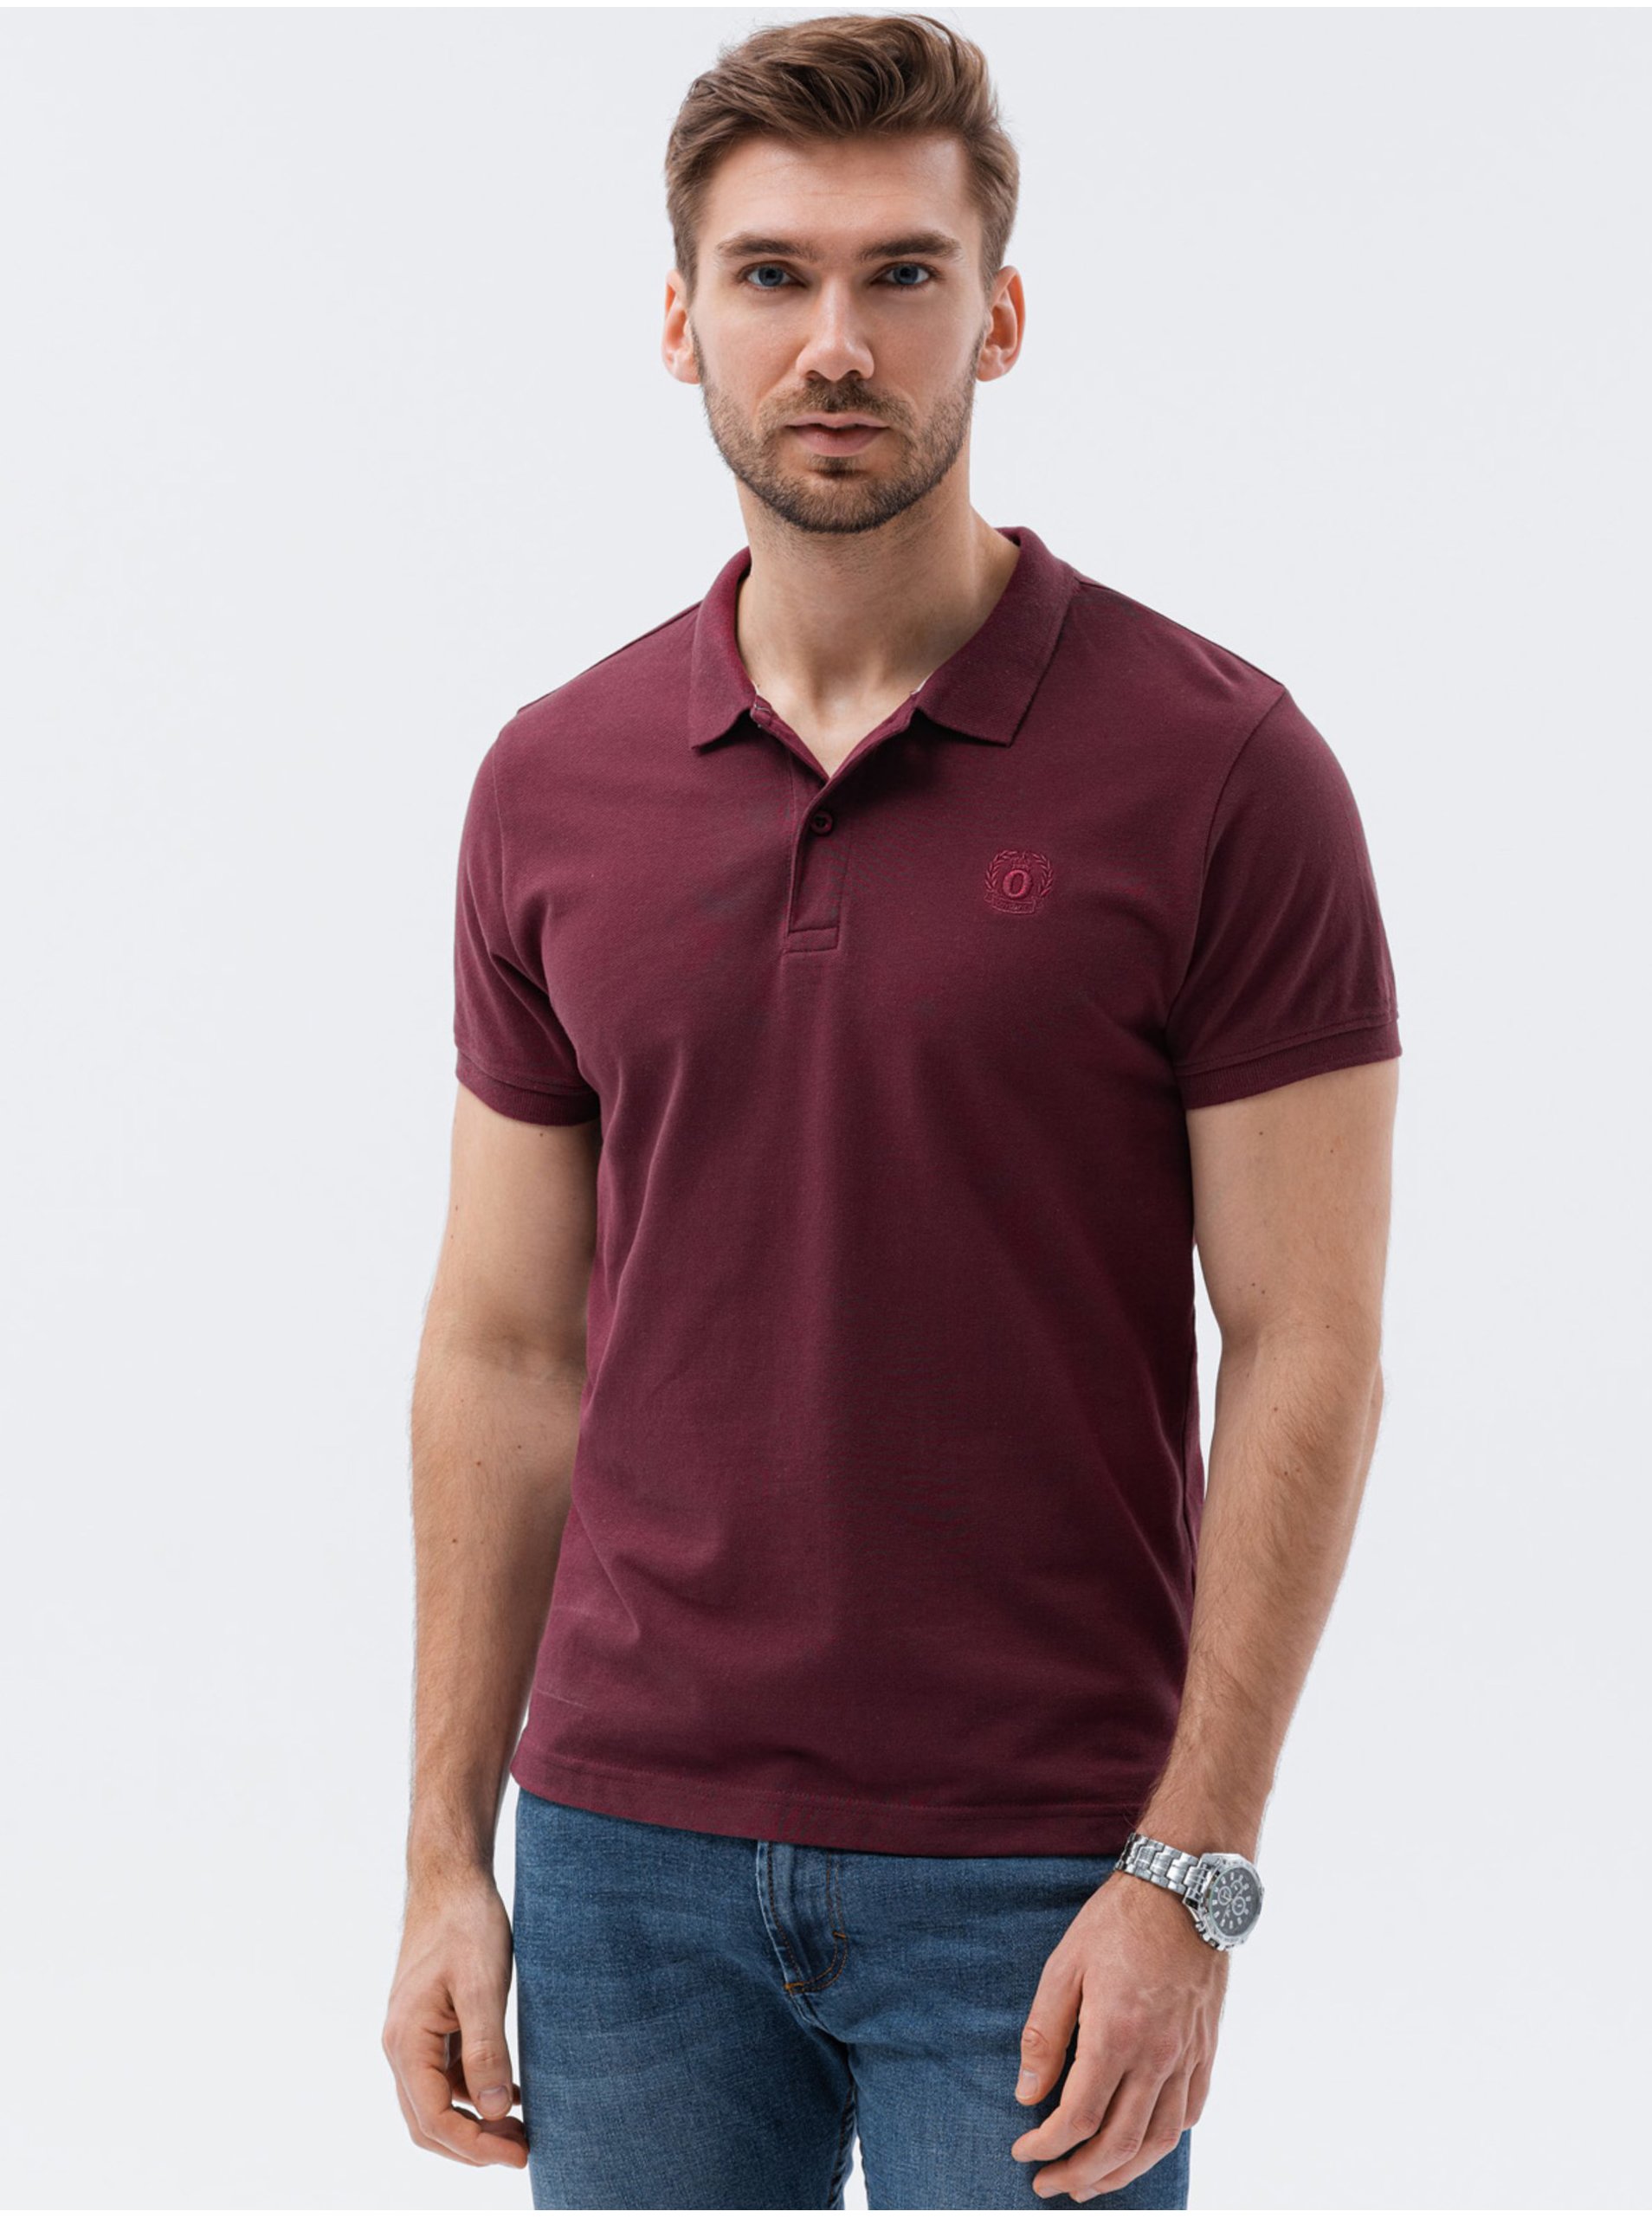 E-shop Vínové pánské polo tričko bez potisku Ombre Clothing S1374 basic